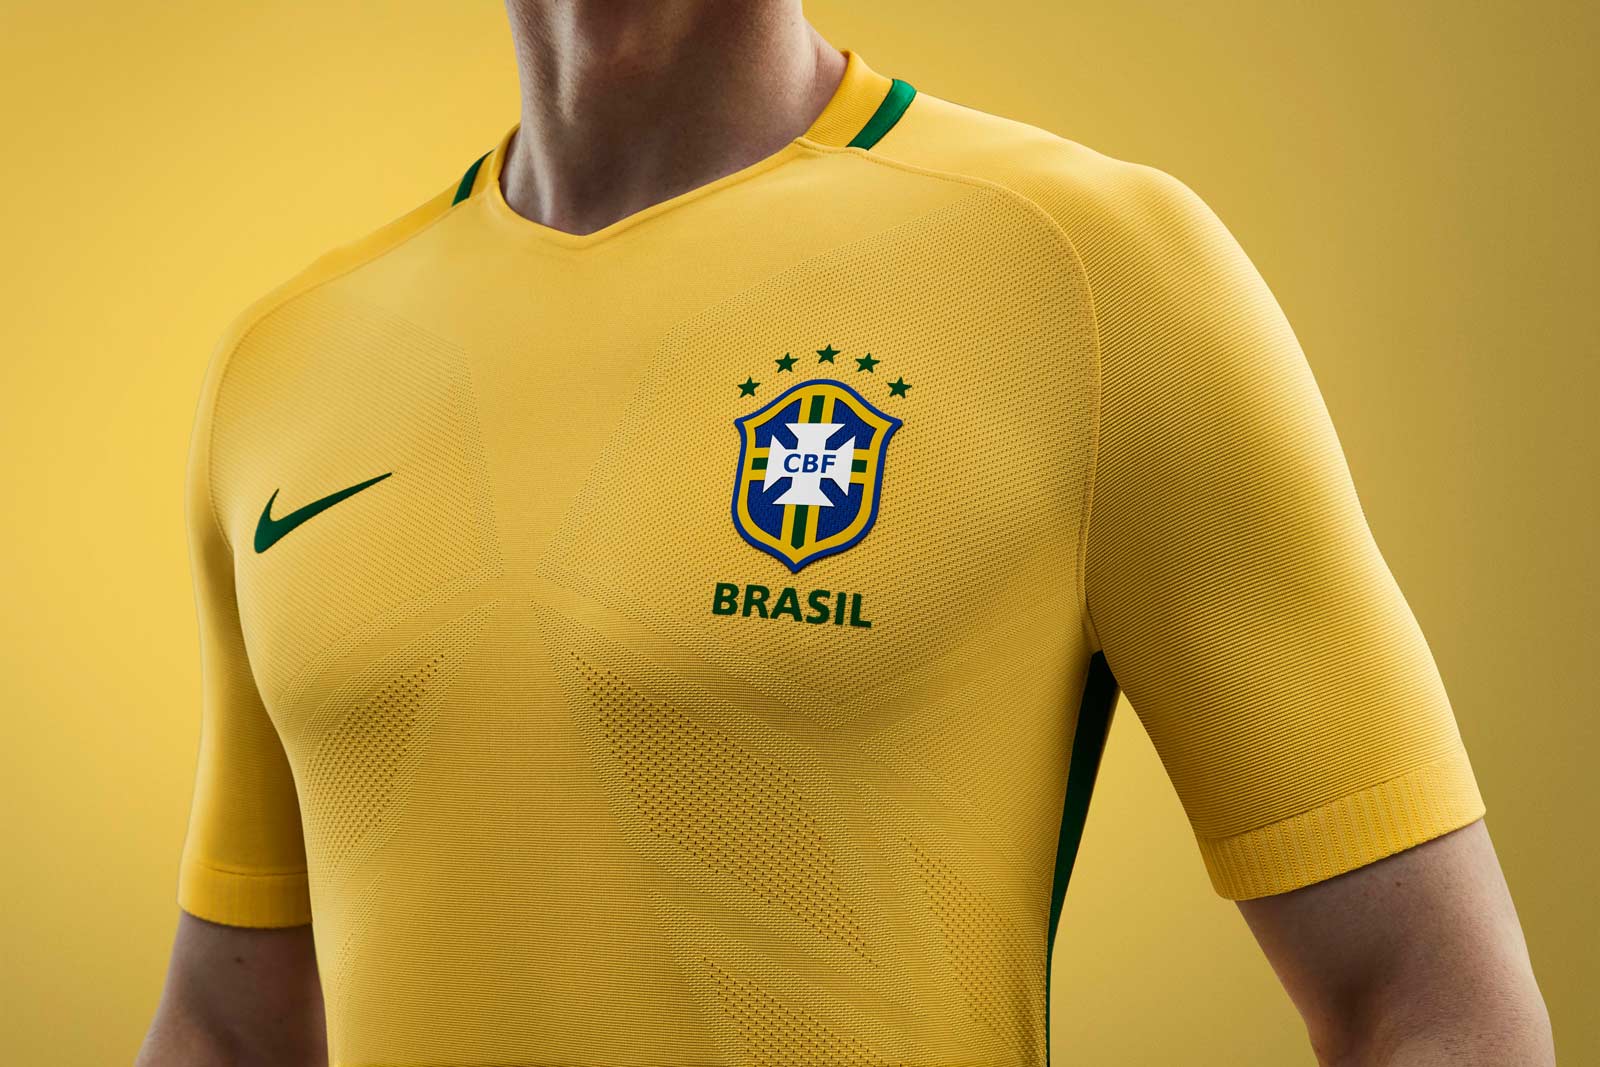  پیراهن جدید تیم ملی برزیل رونمایی شد+ عکس